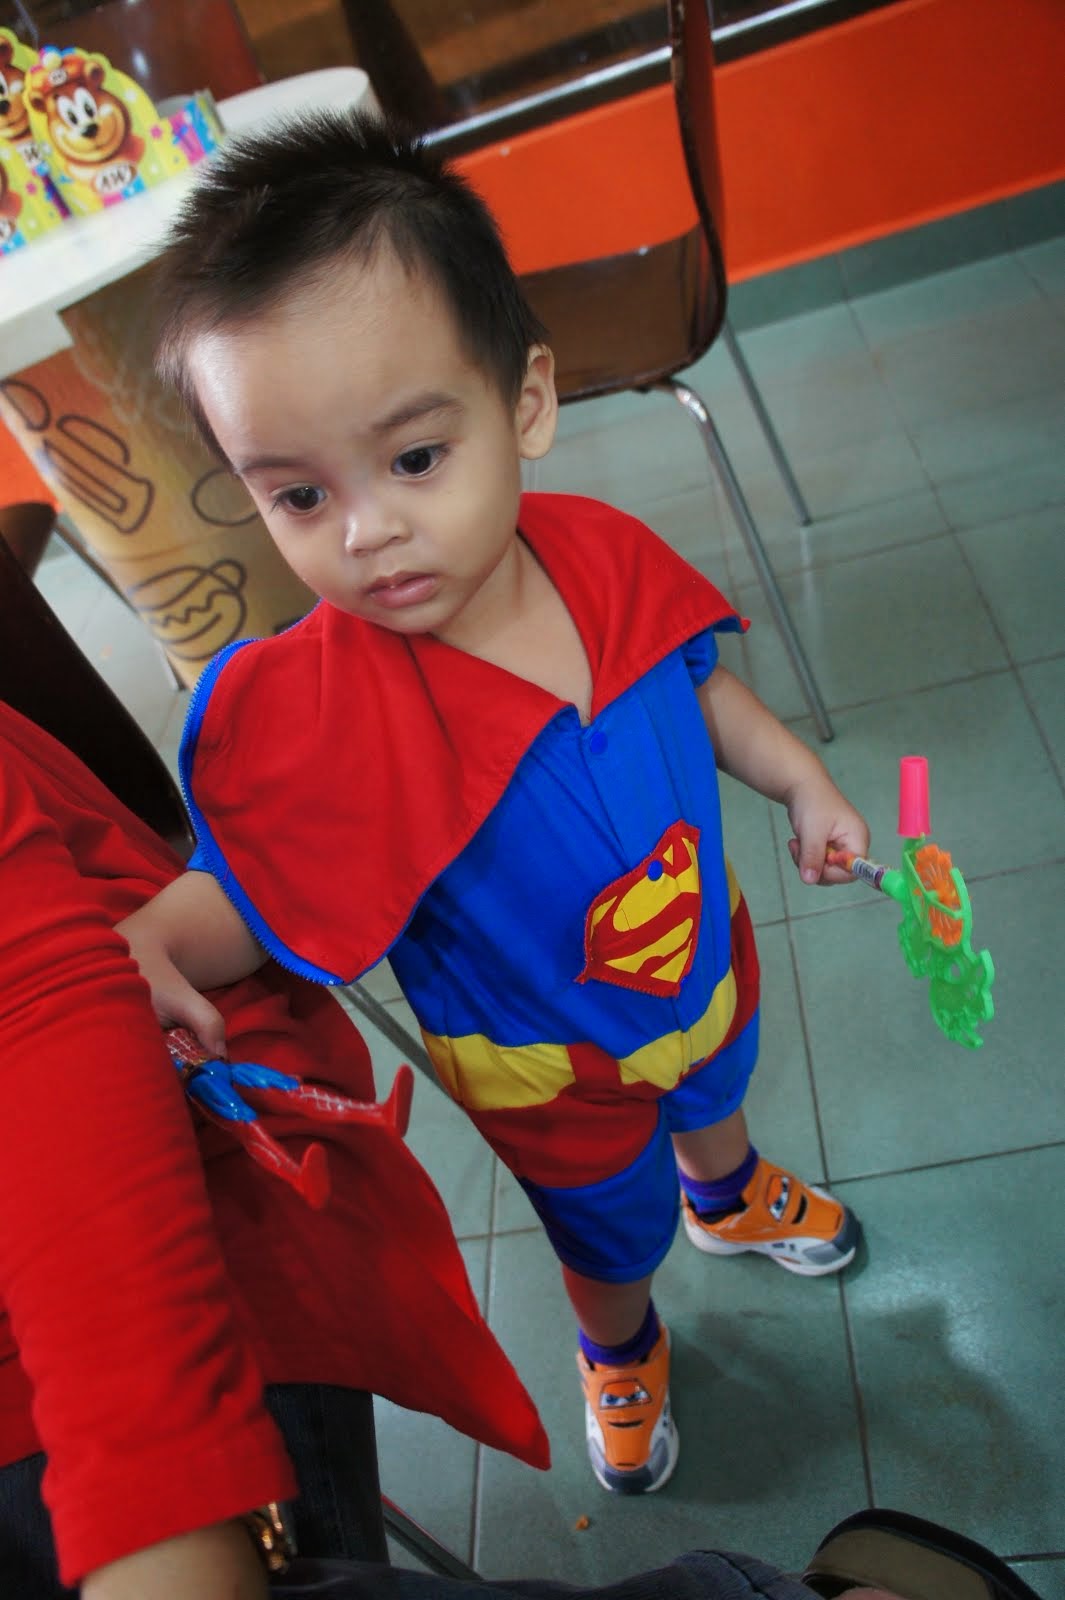 My Superboy!